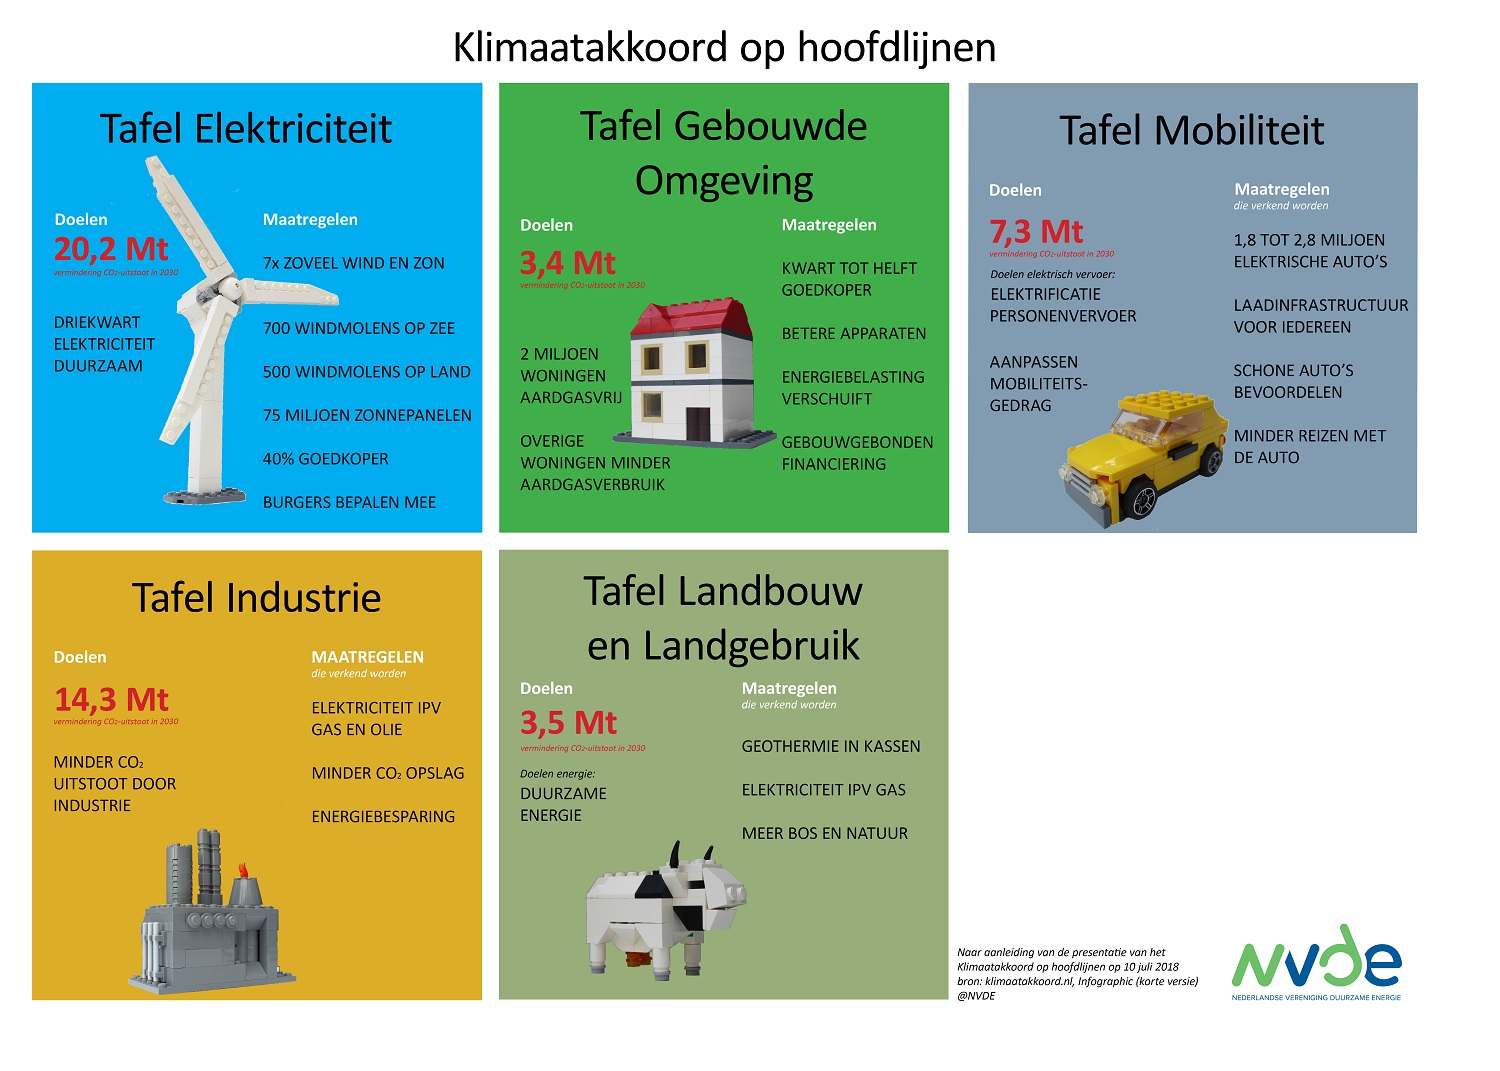 specificeren In het algemeen Berg kleding op Klimaatakkoord hoofdlijnen: basis voor snelle groei duurzame energie tegen  lagere kosten - NVDE - Nederlandse Vereniging Duurzame Energie